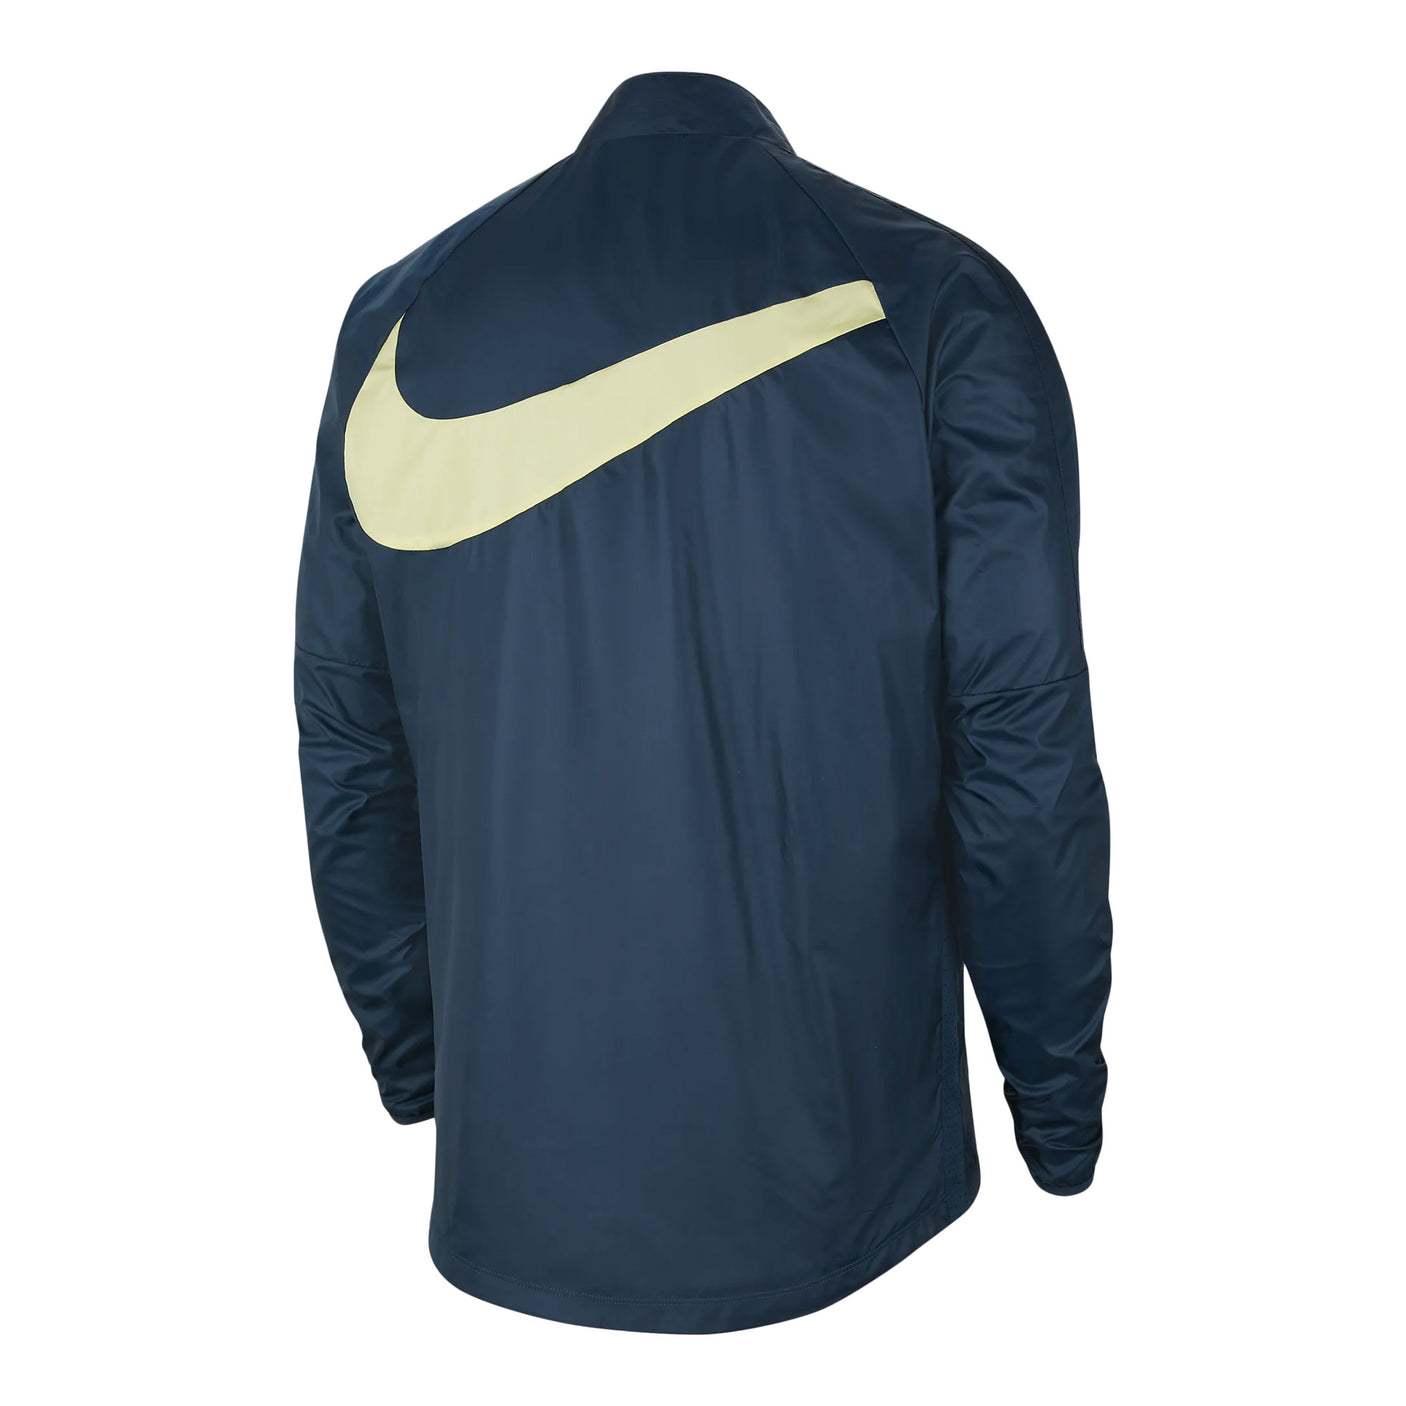 Nike Men's Club America Repel Academy AWF Jacket Armory Navy/Lemon Chiffon  - S